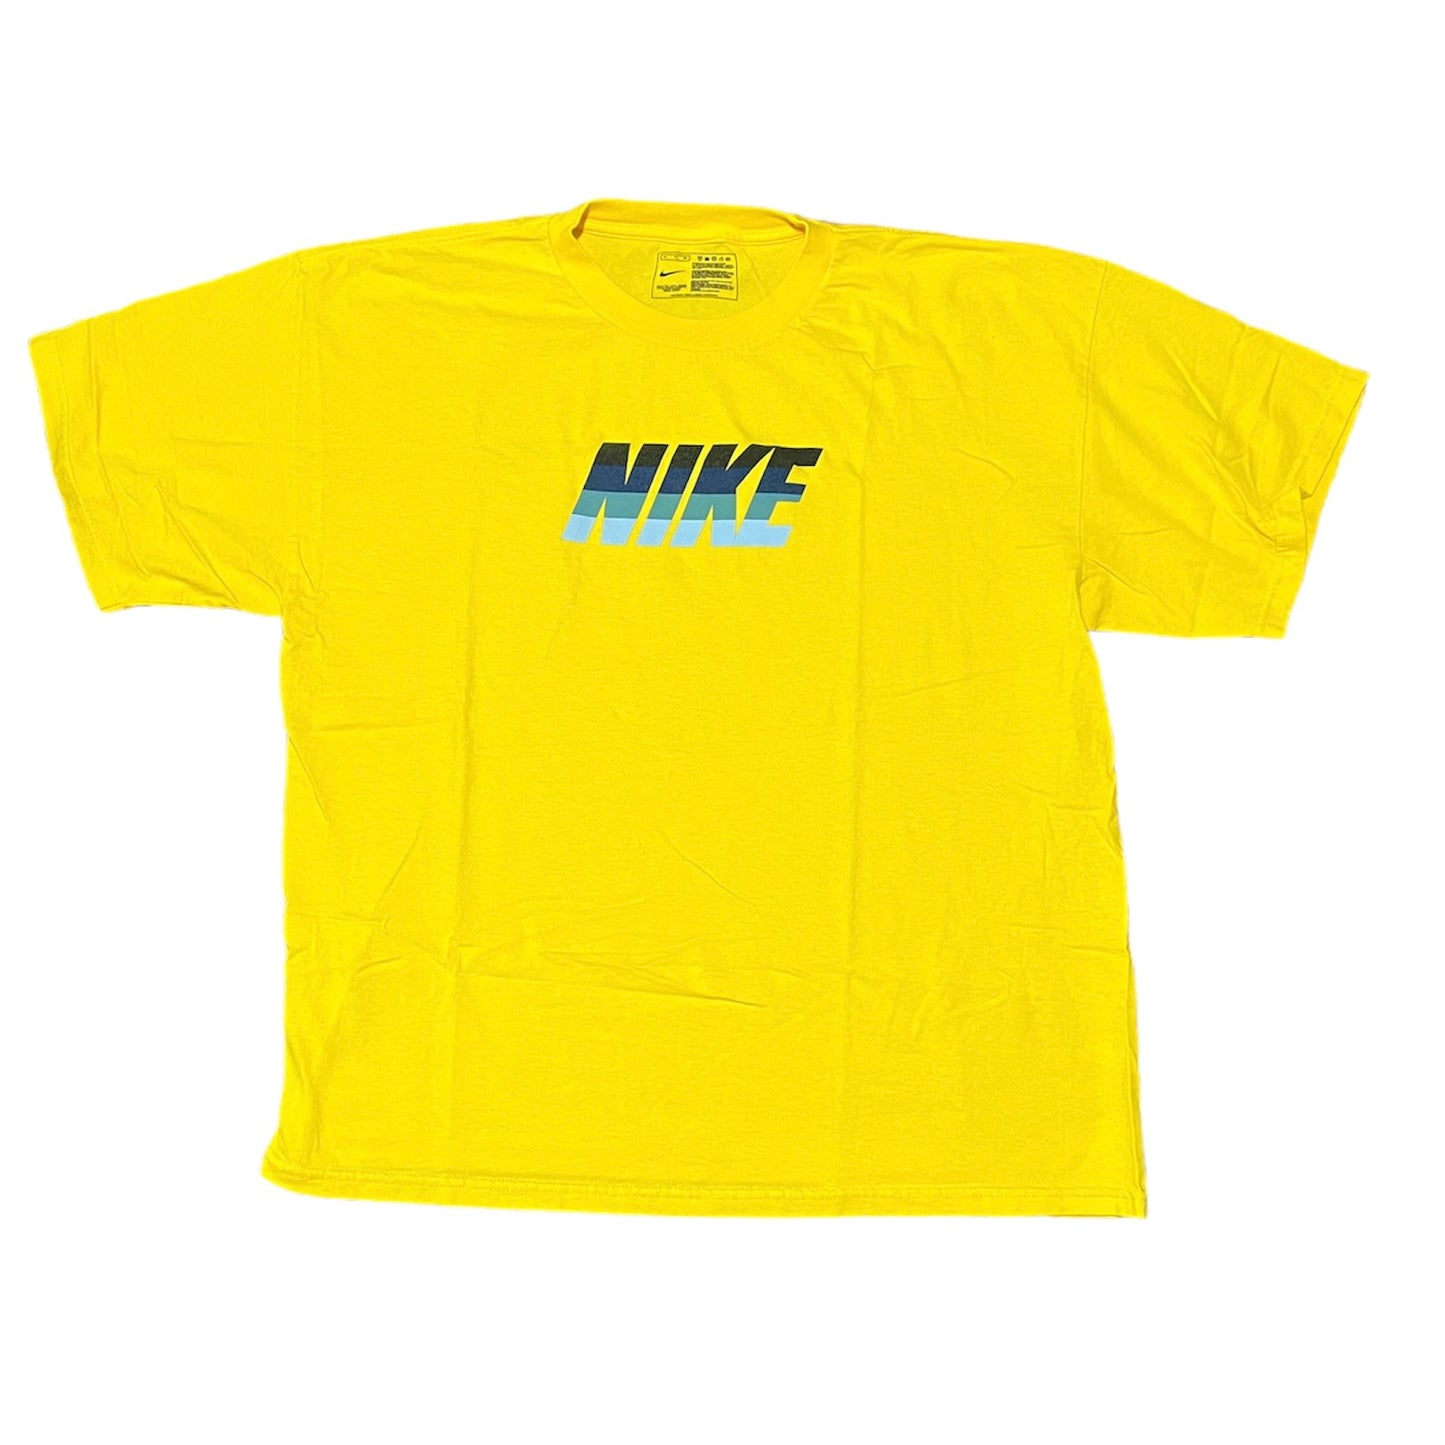 Nike T-Shirt Size X-Large